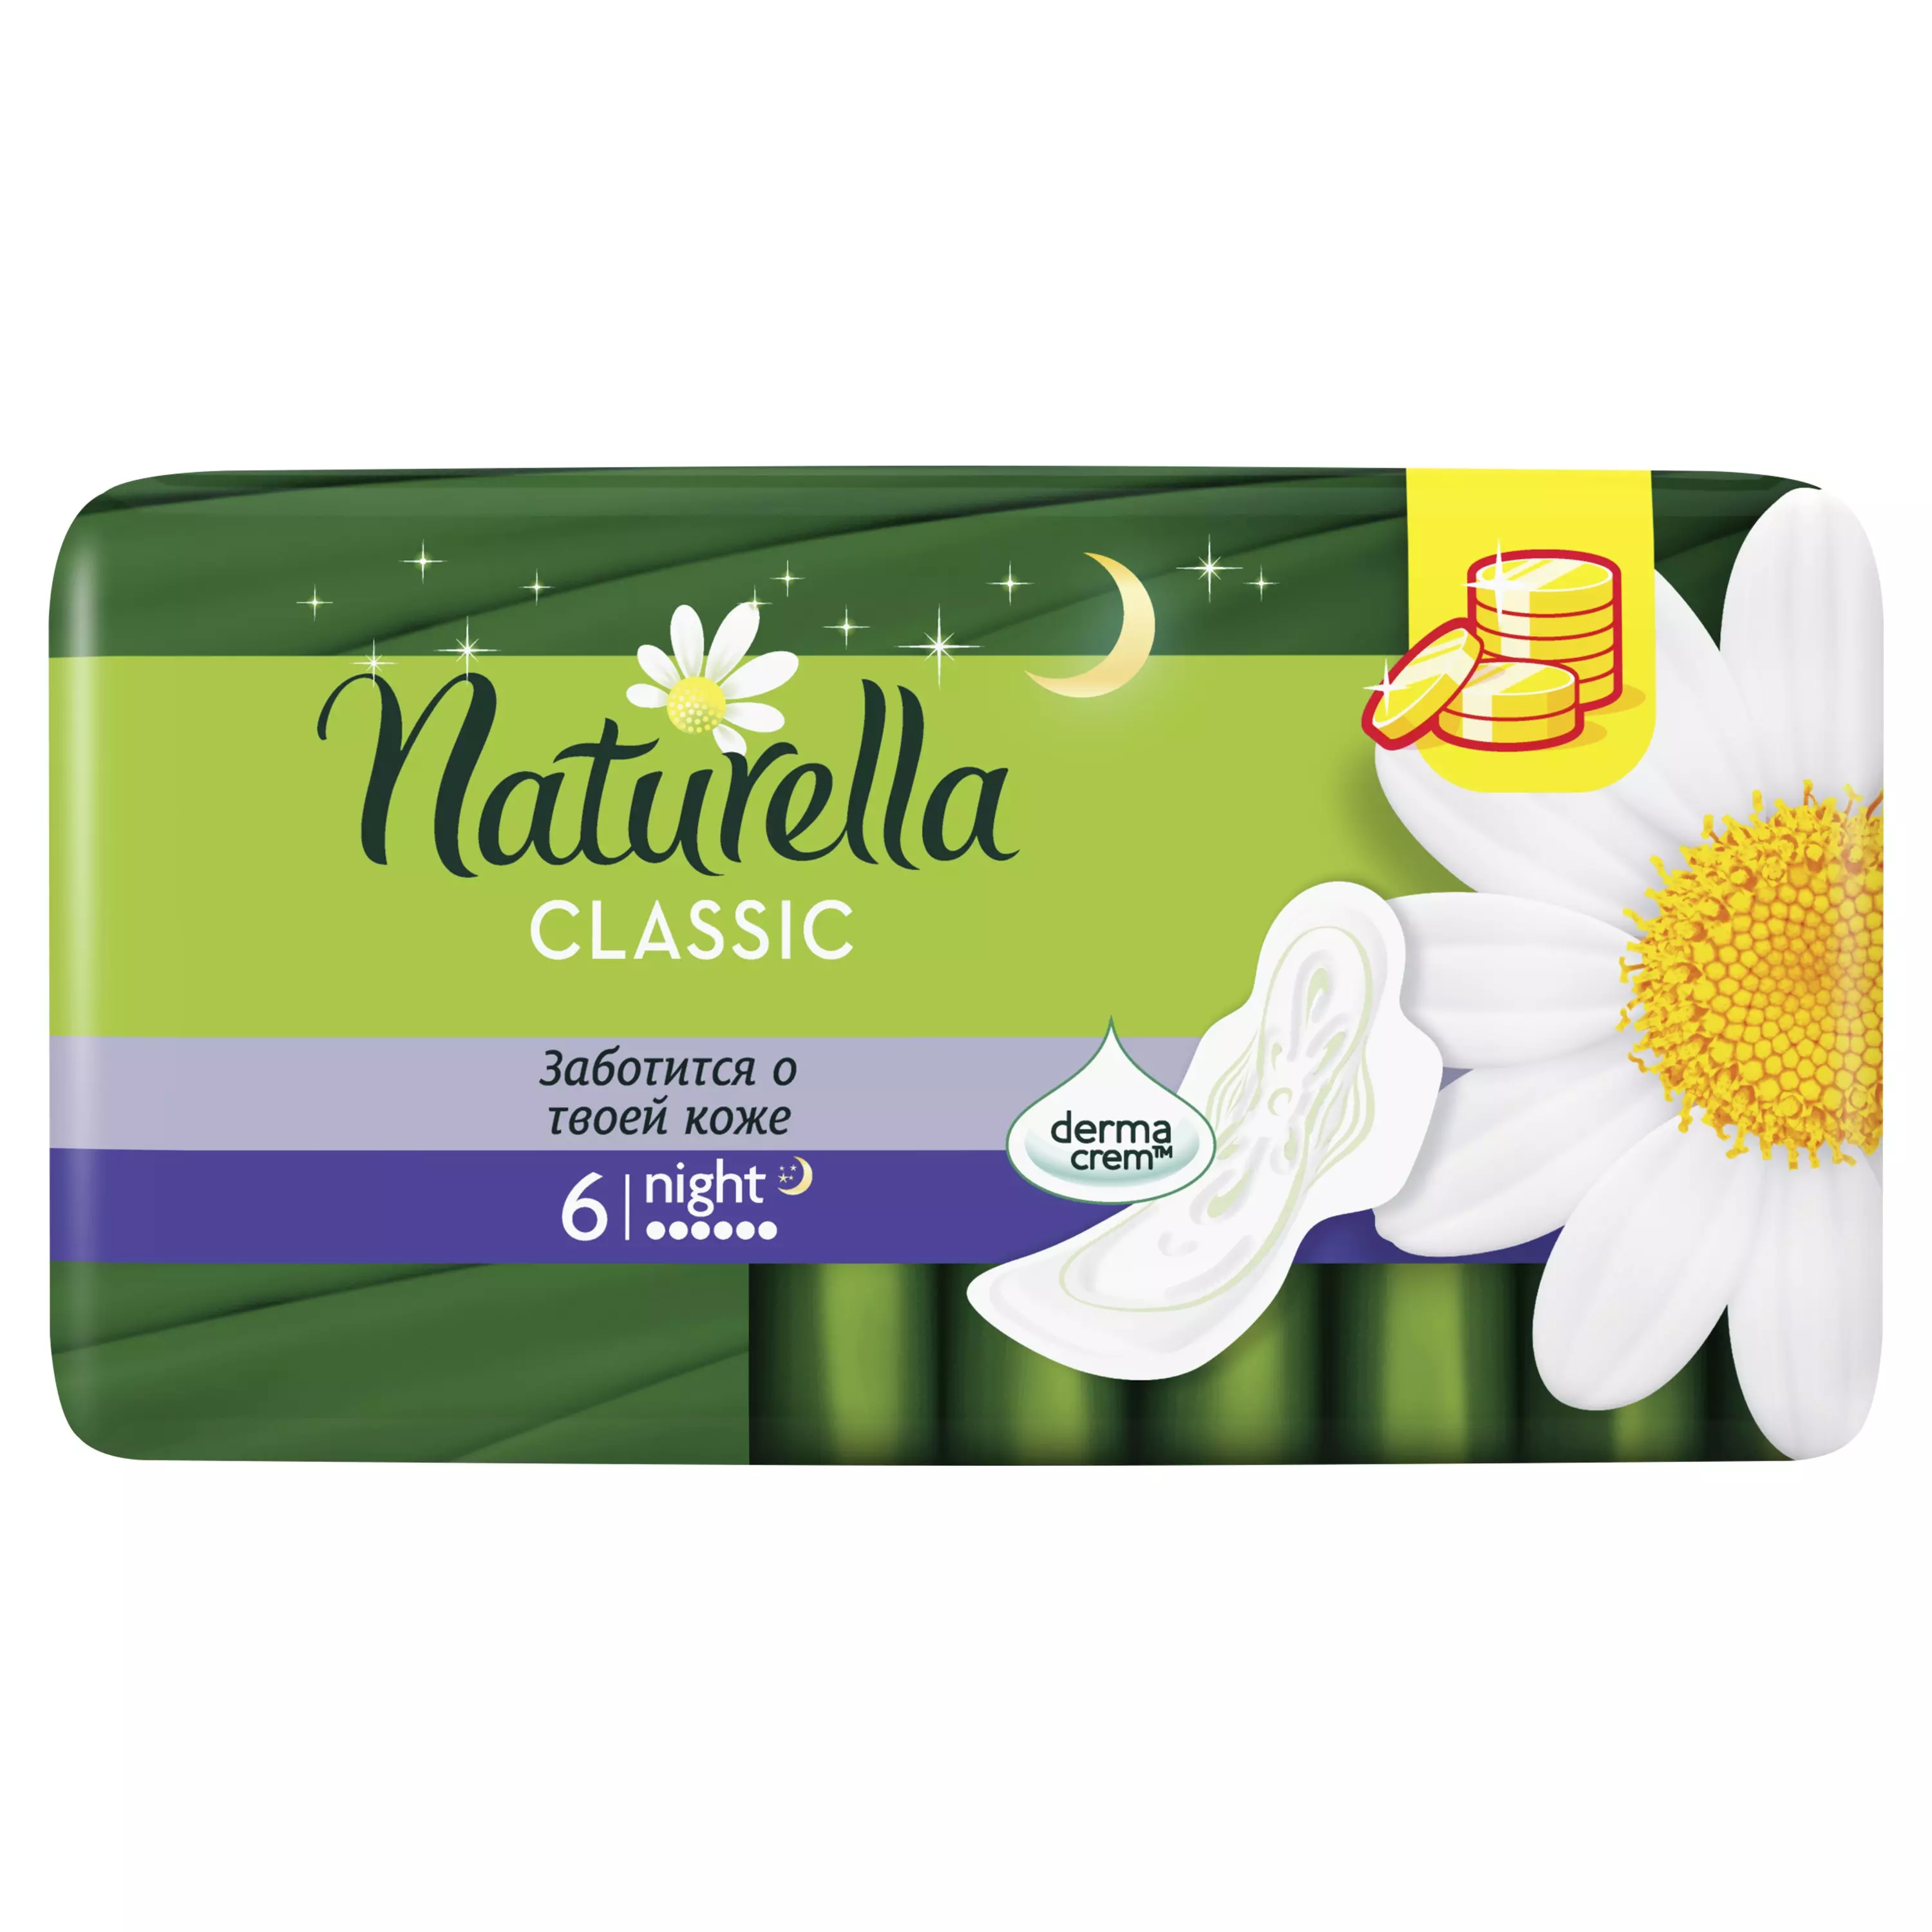 Прокладки Naturella Classic Camomile Night Single ароматиз с крылышками 6шт